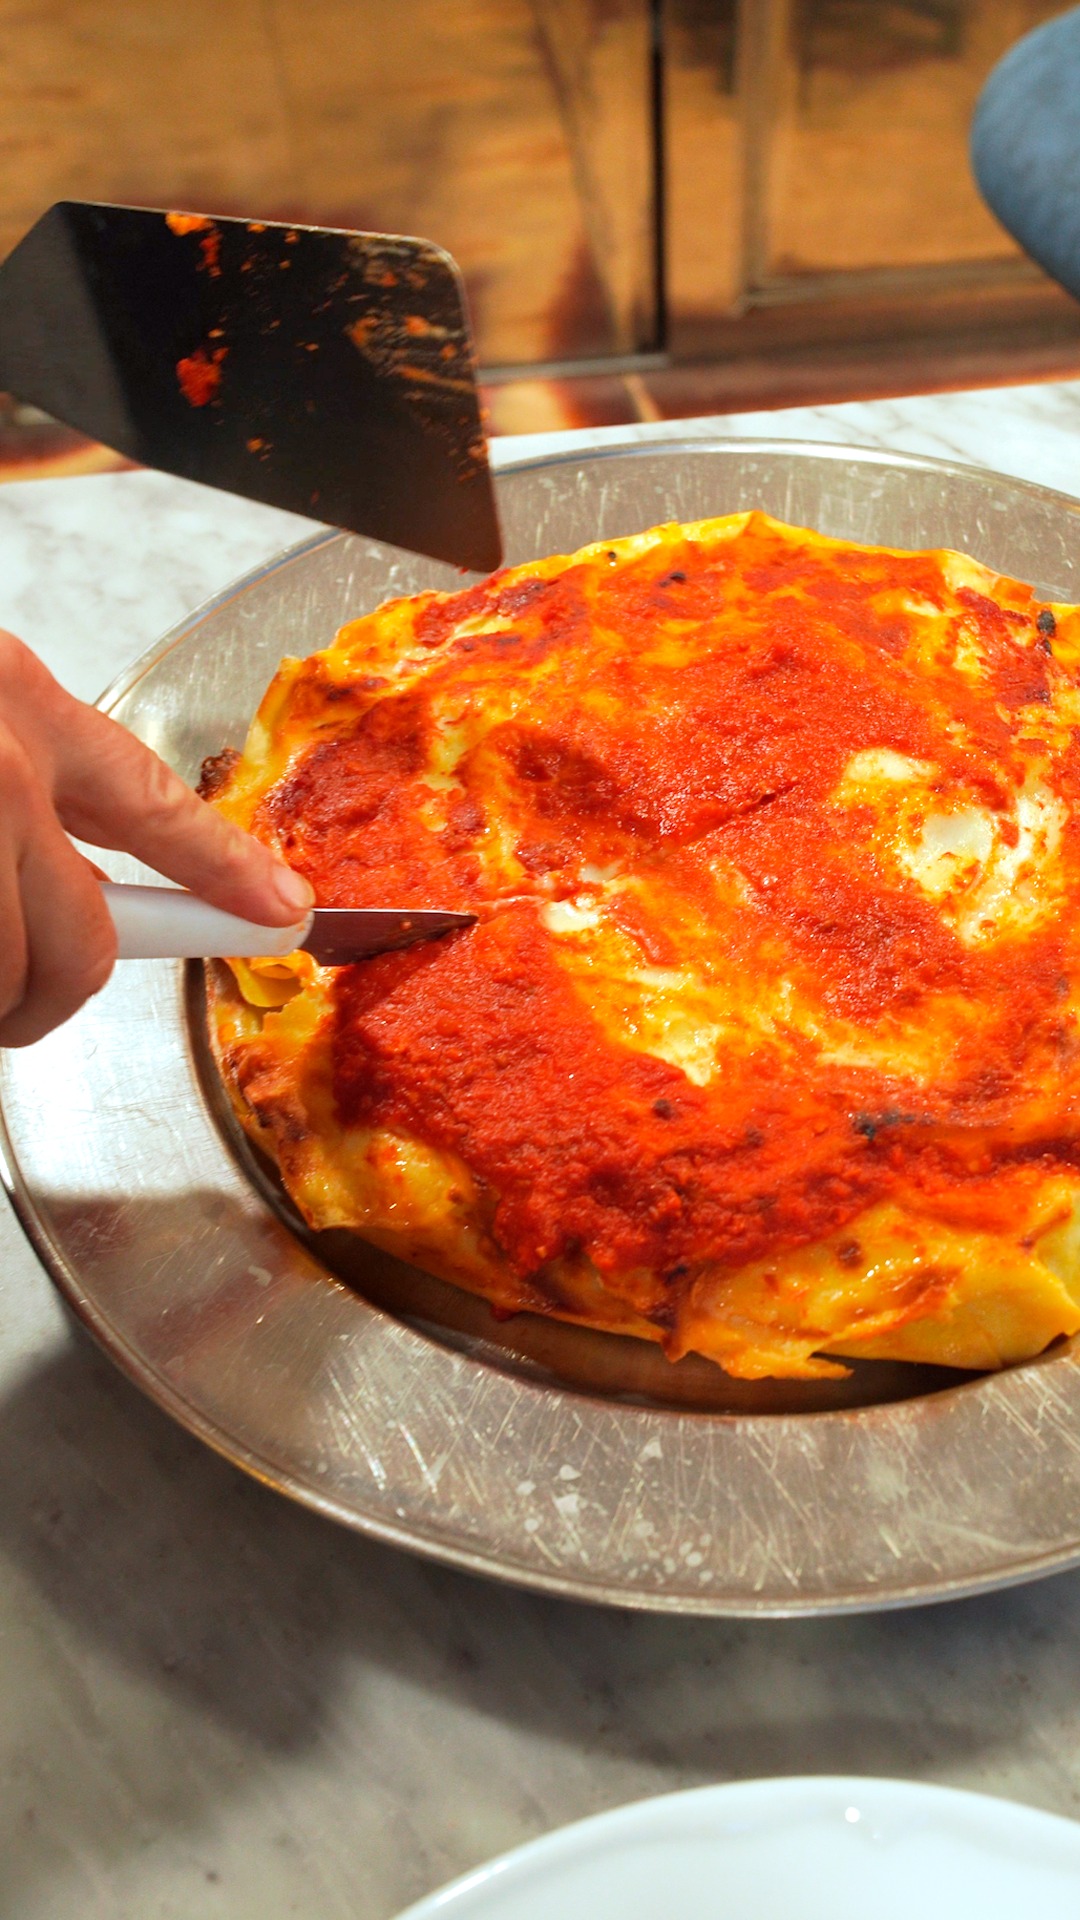 Quanta voglia di #lasagna?🍝

Un grande classico della cucina italiana perfetto